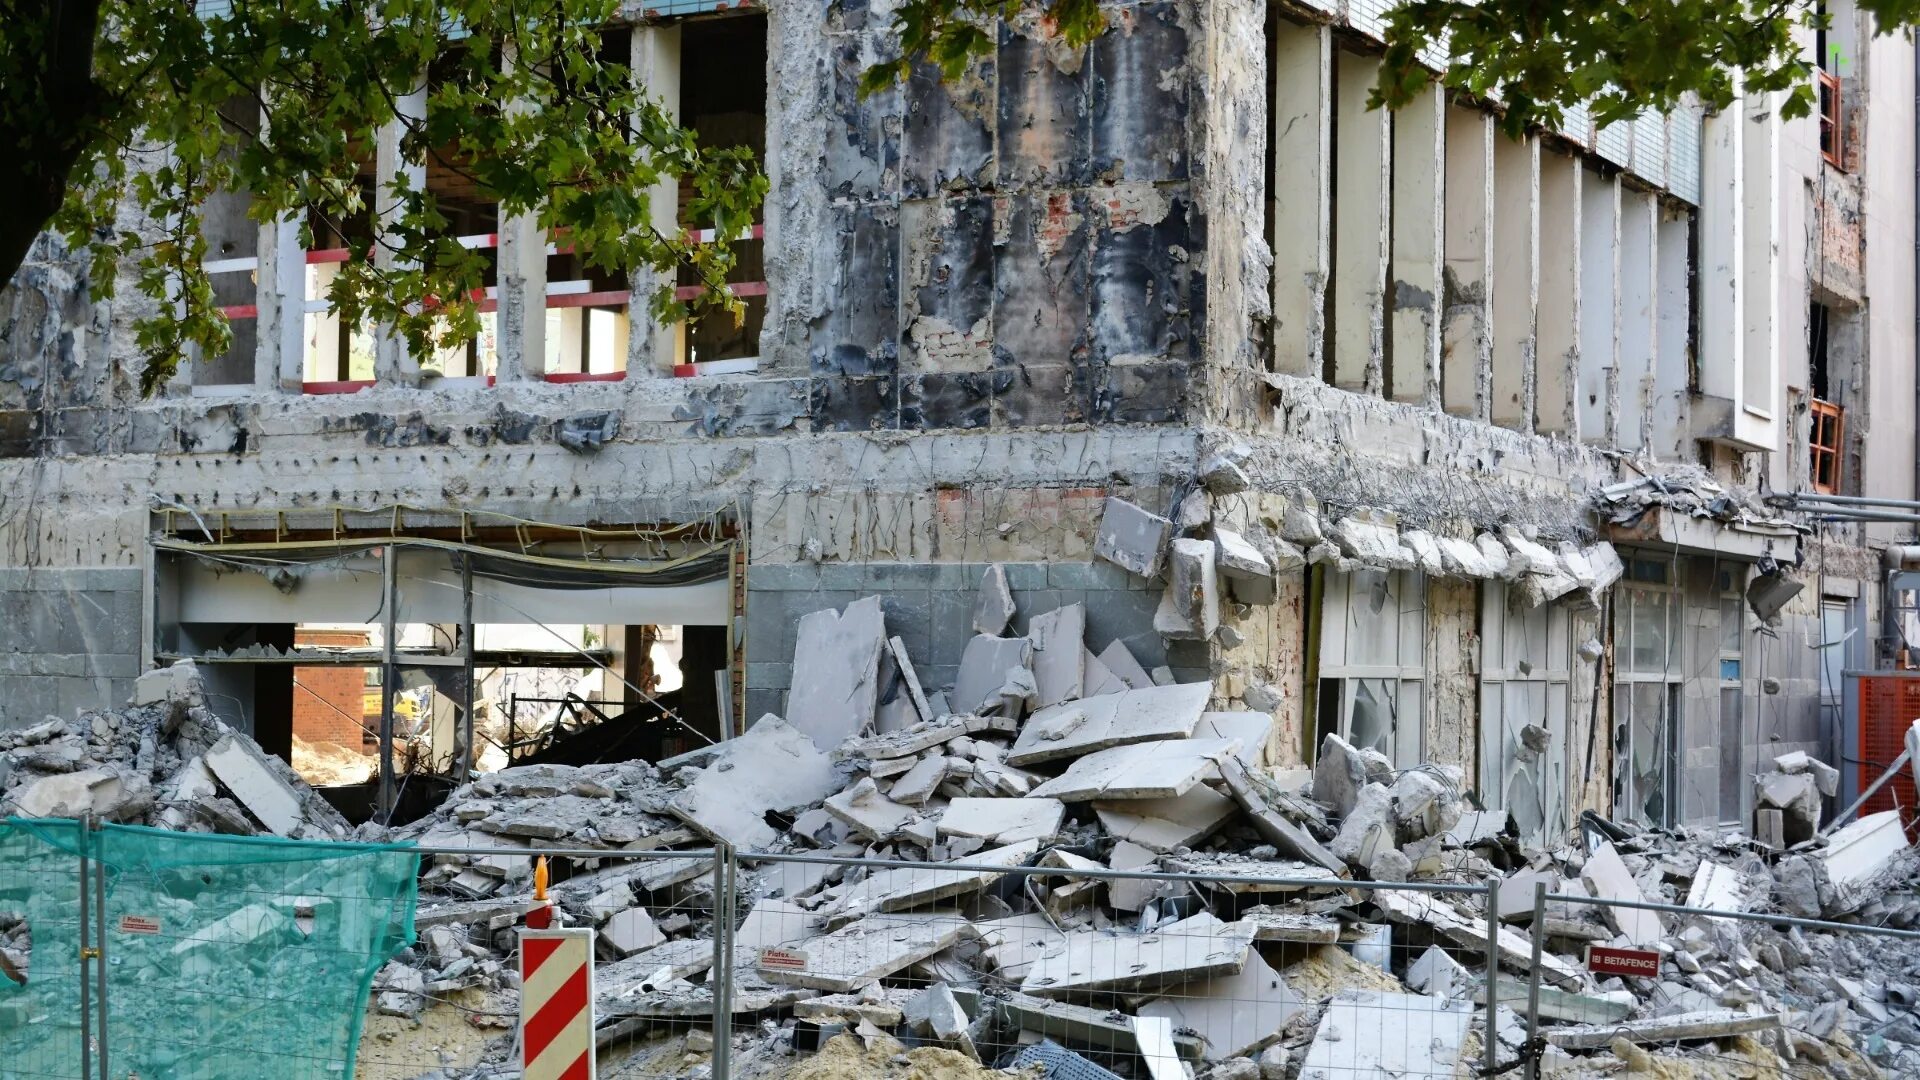 Землетрясение на Гаити 2010 президентский дворец. Нефтегорск землетрясение 1995. Землетрясение в Турции 2023. Турция землетрясение сейчас 2023.